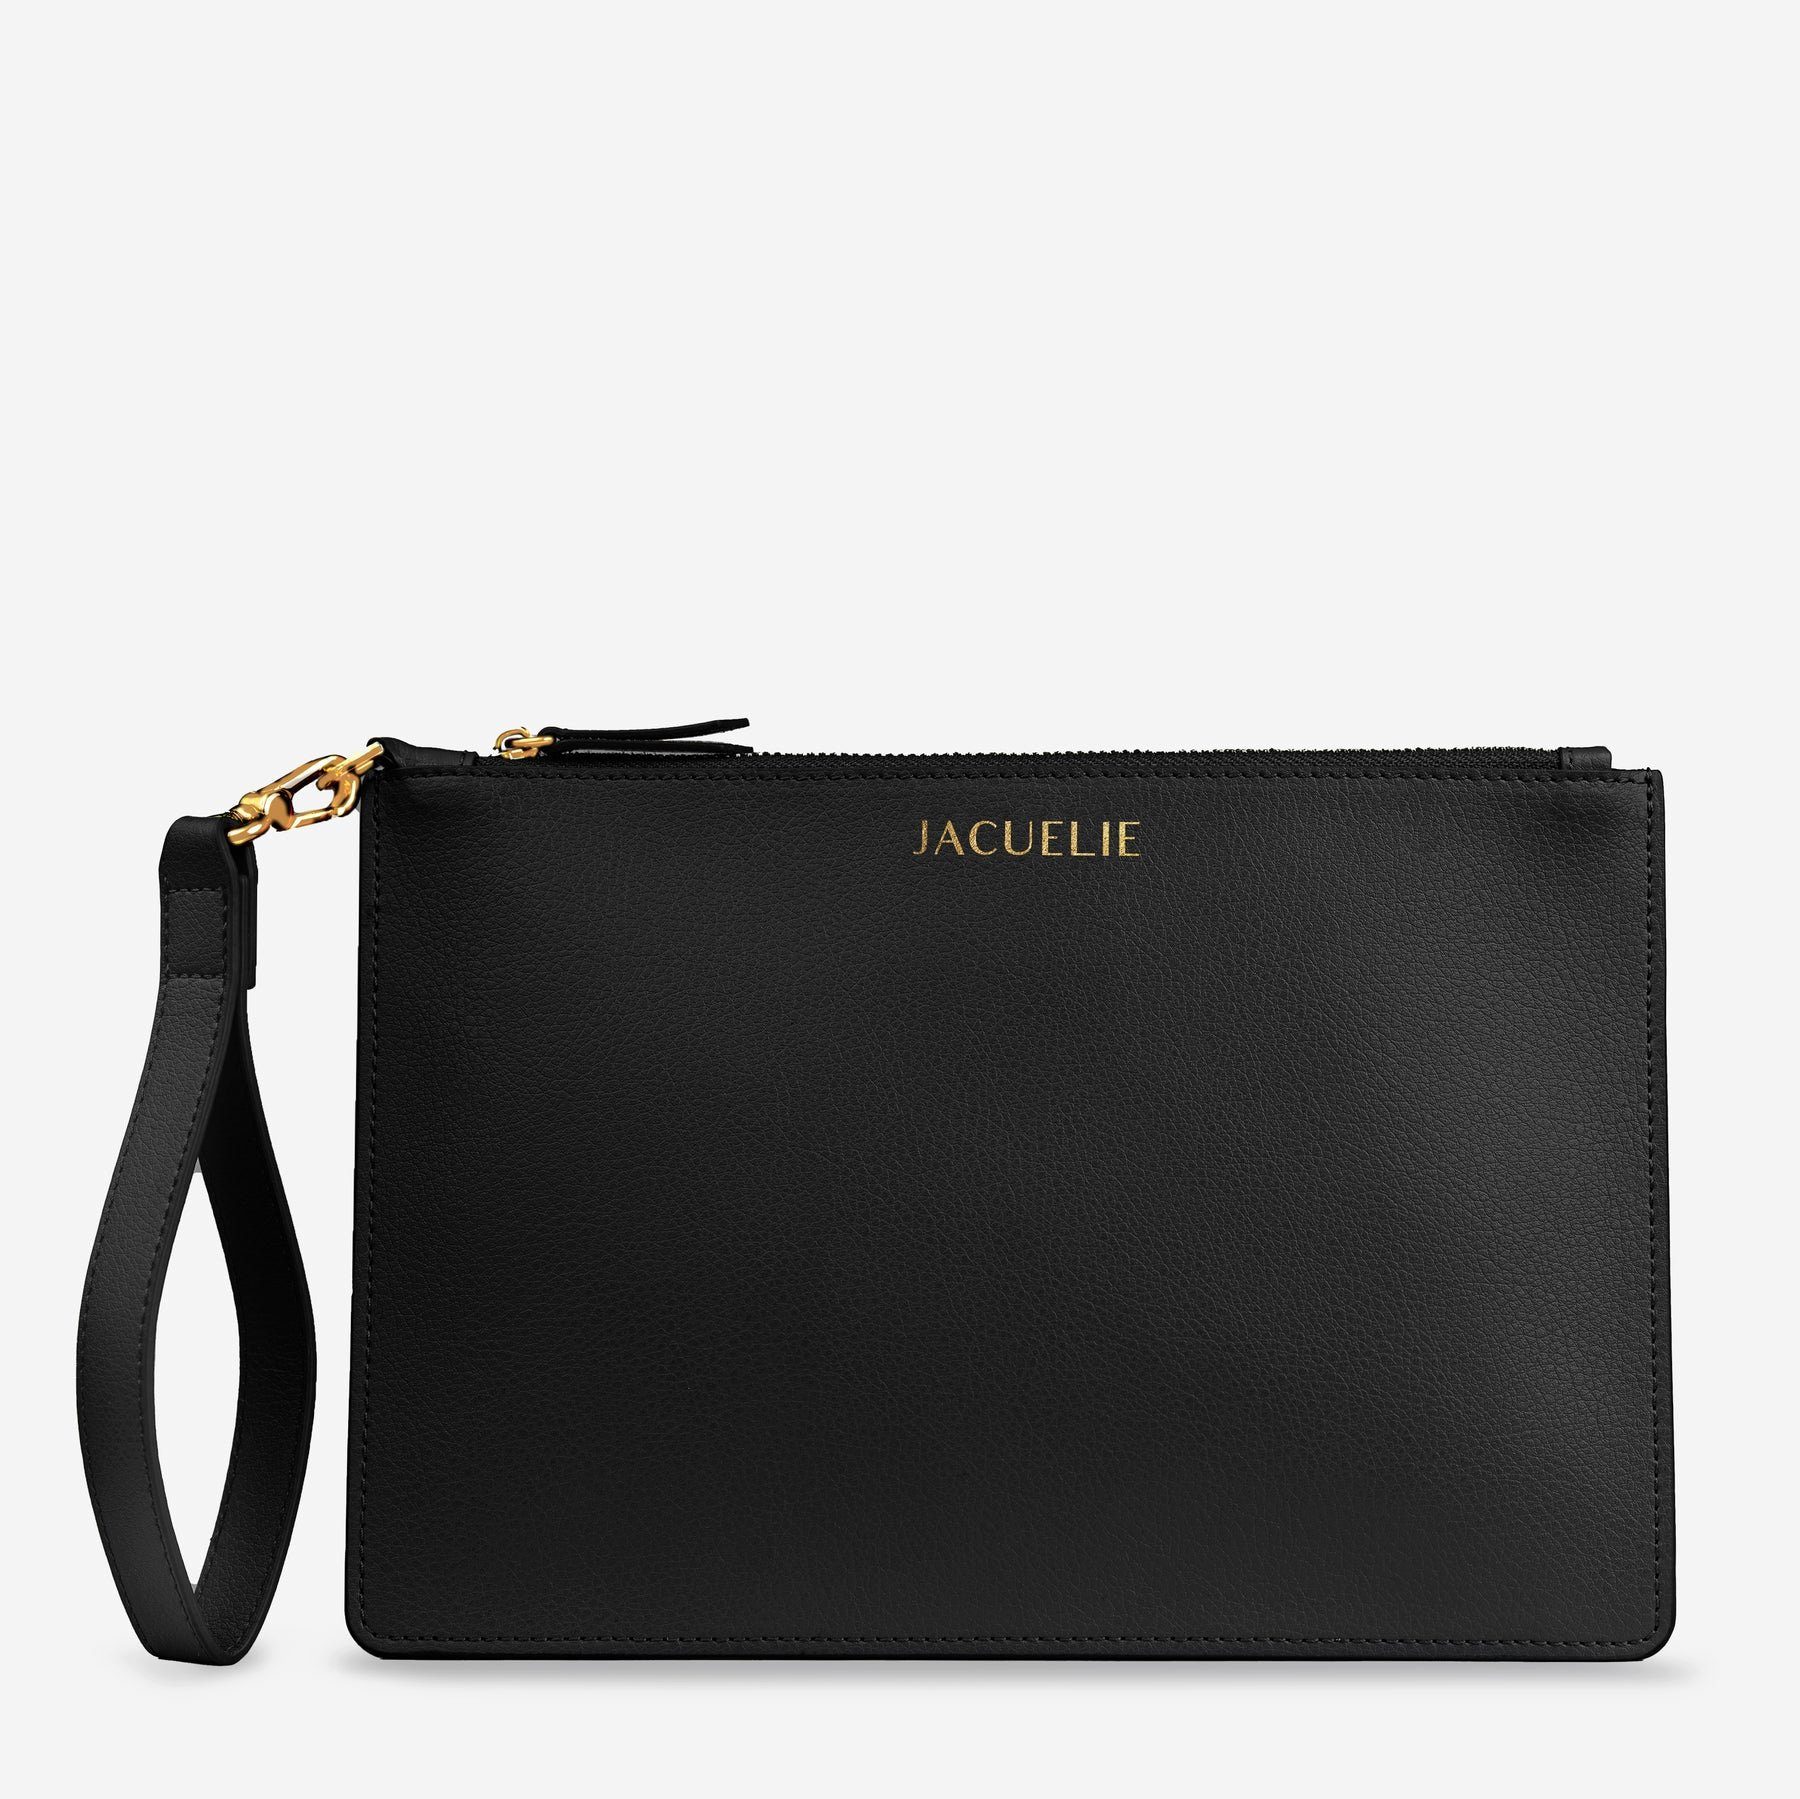 JACUELIE Clutch Еко-товарe Abendtasche Handtasche Frauen Umschlag Clutch Tasche, höchste Verarbeitungsqualität, Bestseller